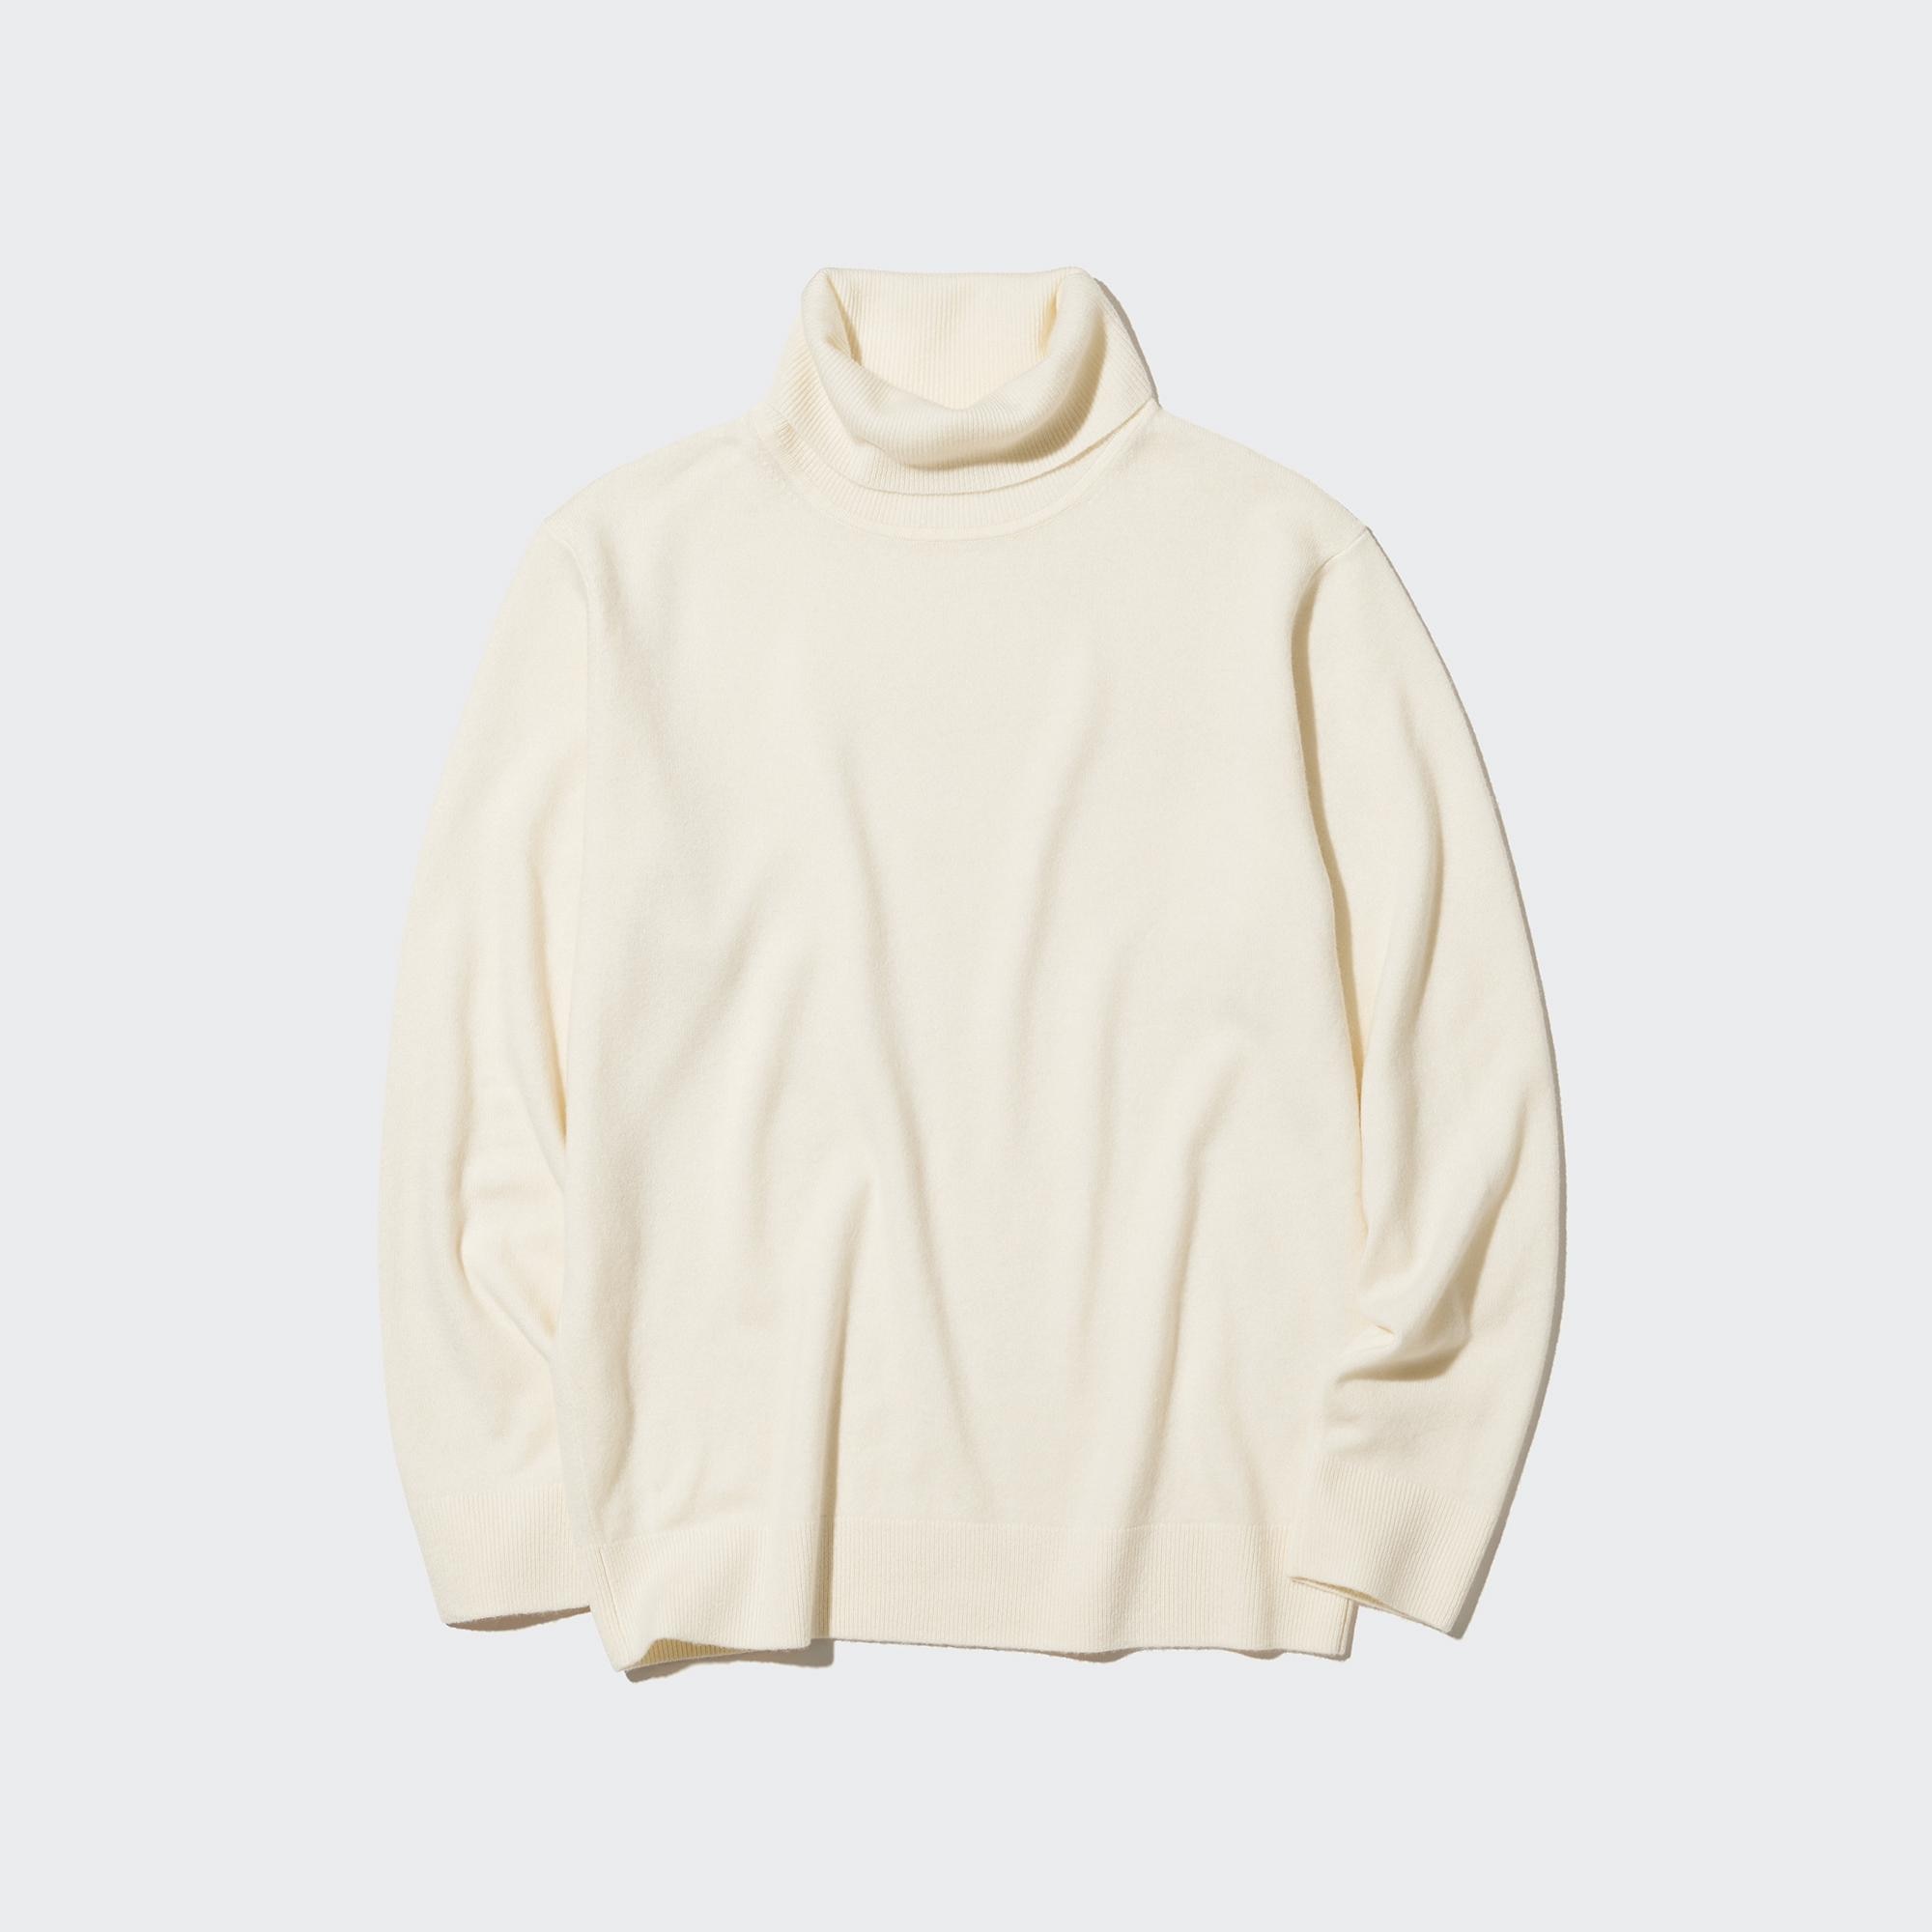 Cashmere Turtleneck LongSleeve Sweater  UNIQLO US